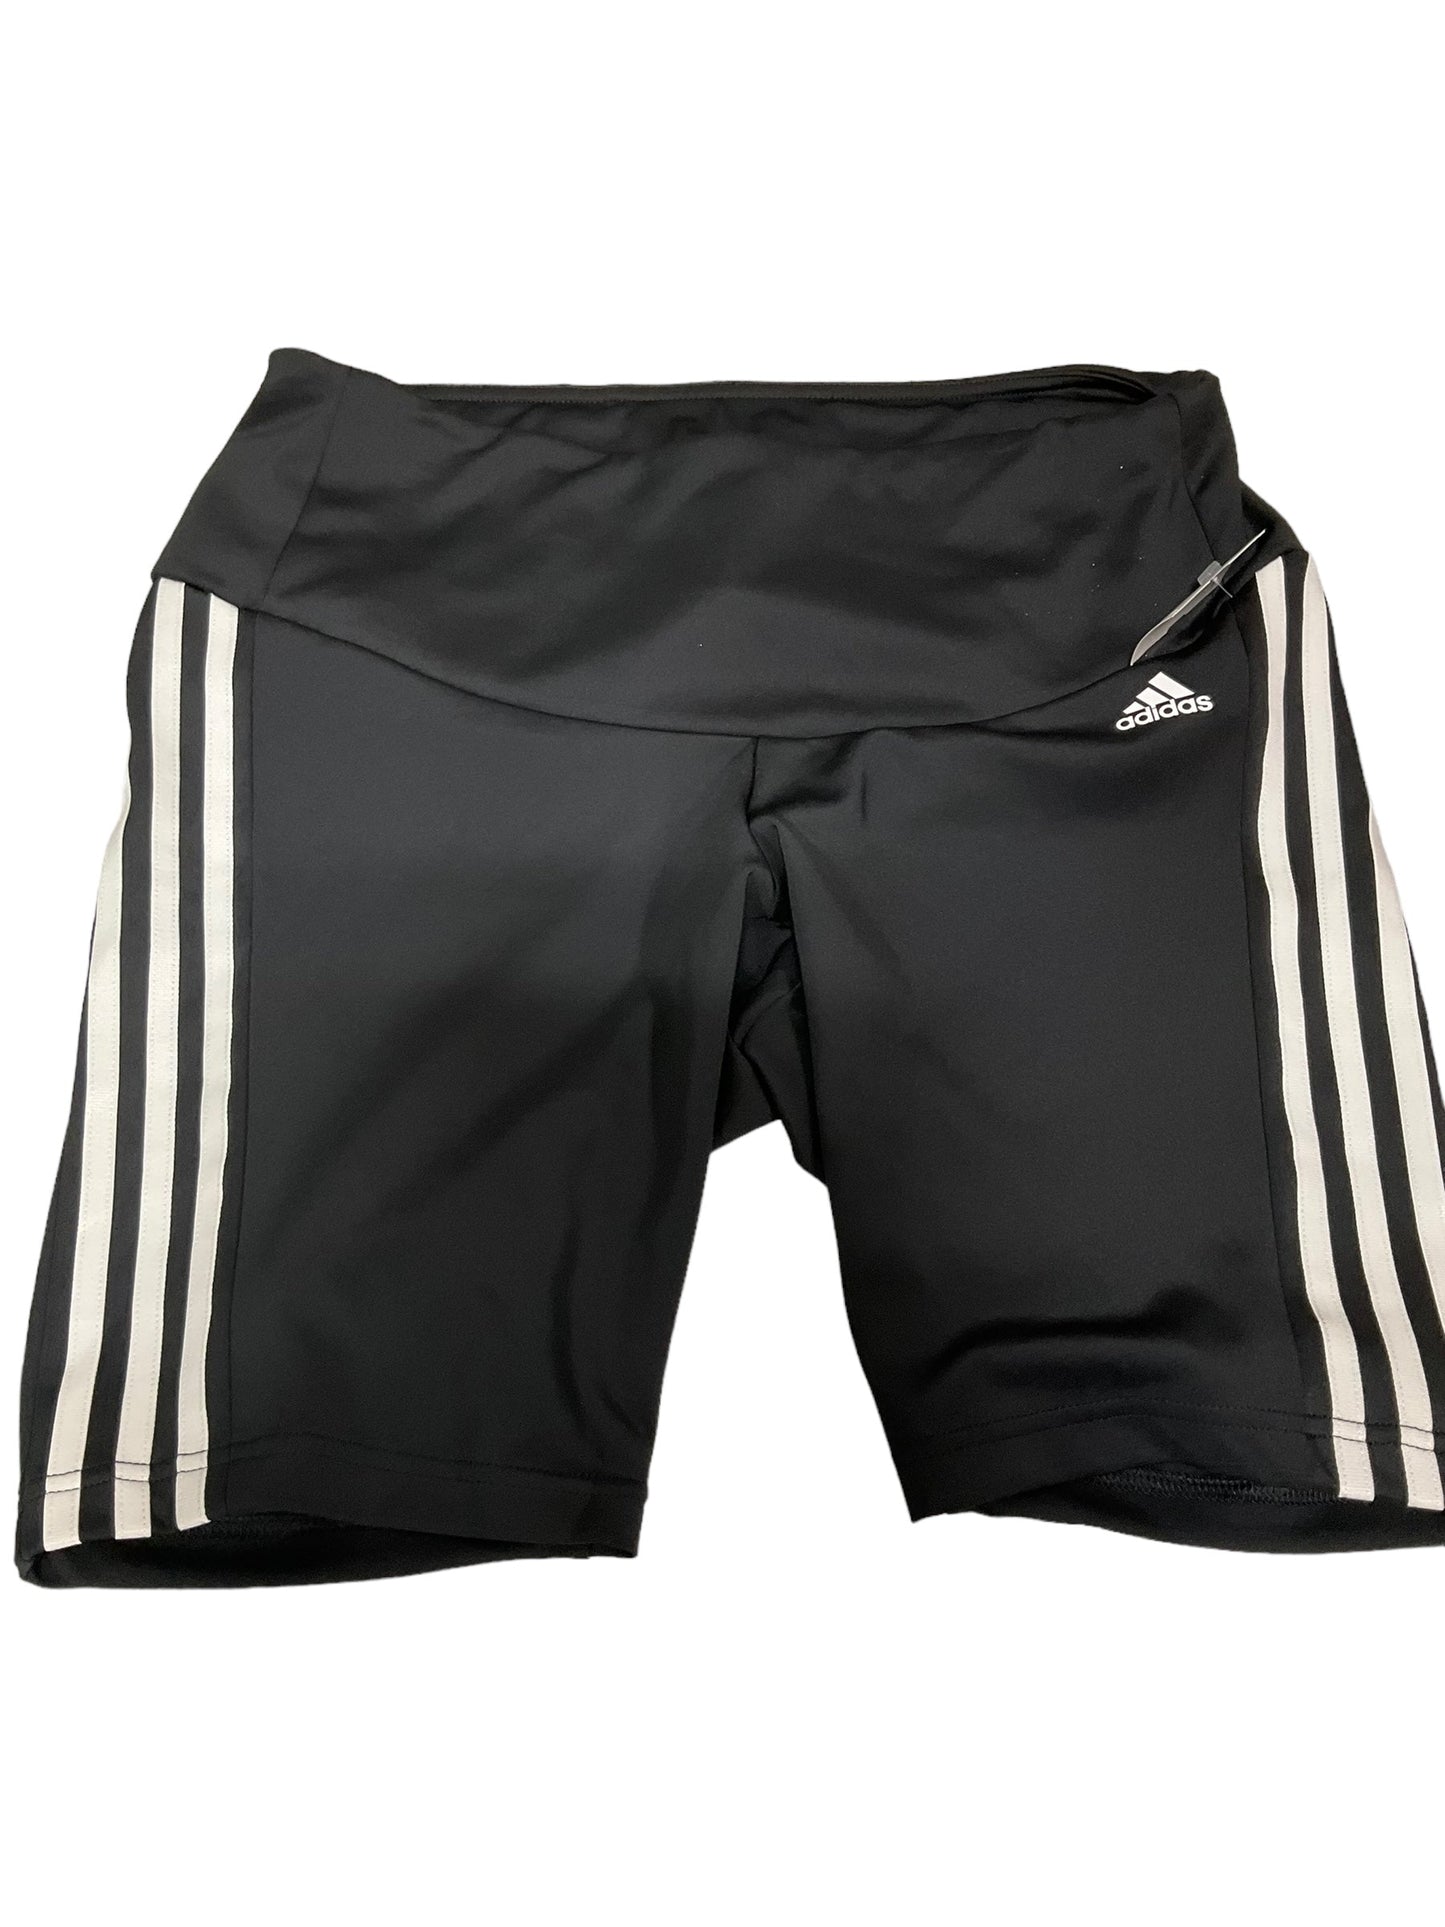 Black Athletic Shorts Adidas, Size 1x